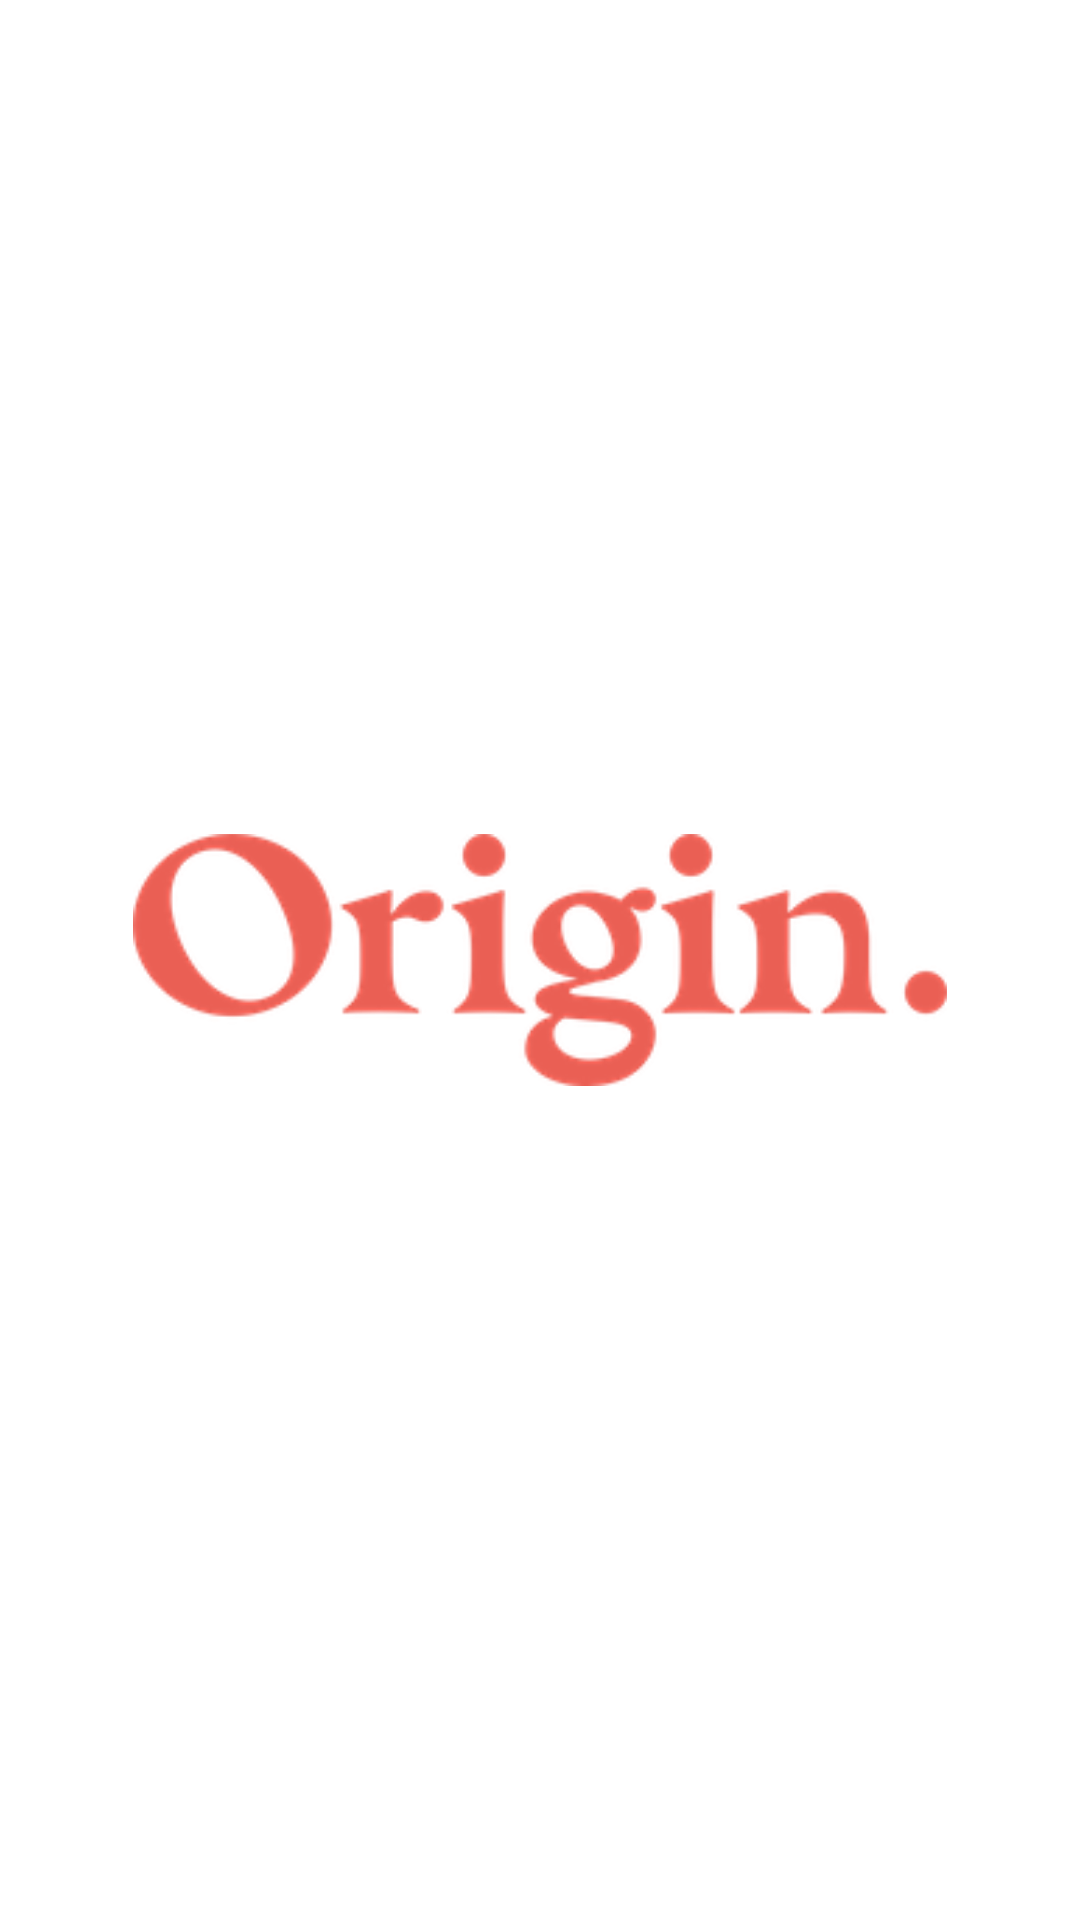 Origin.-image